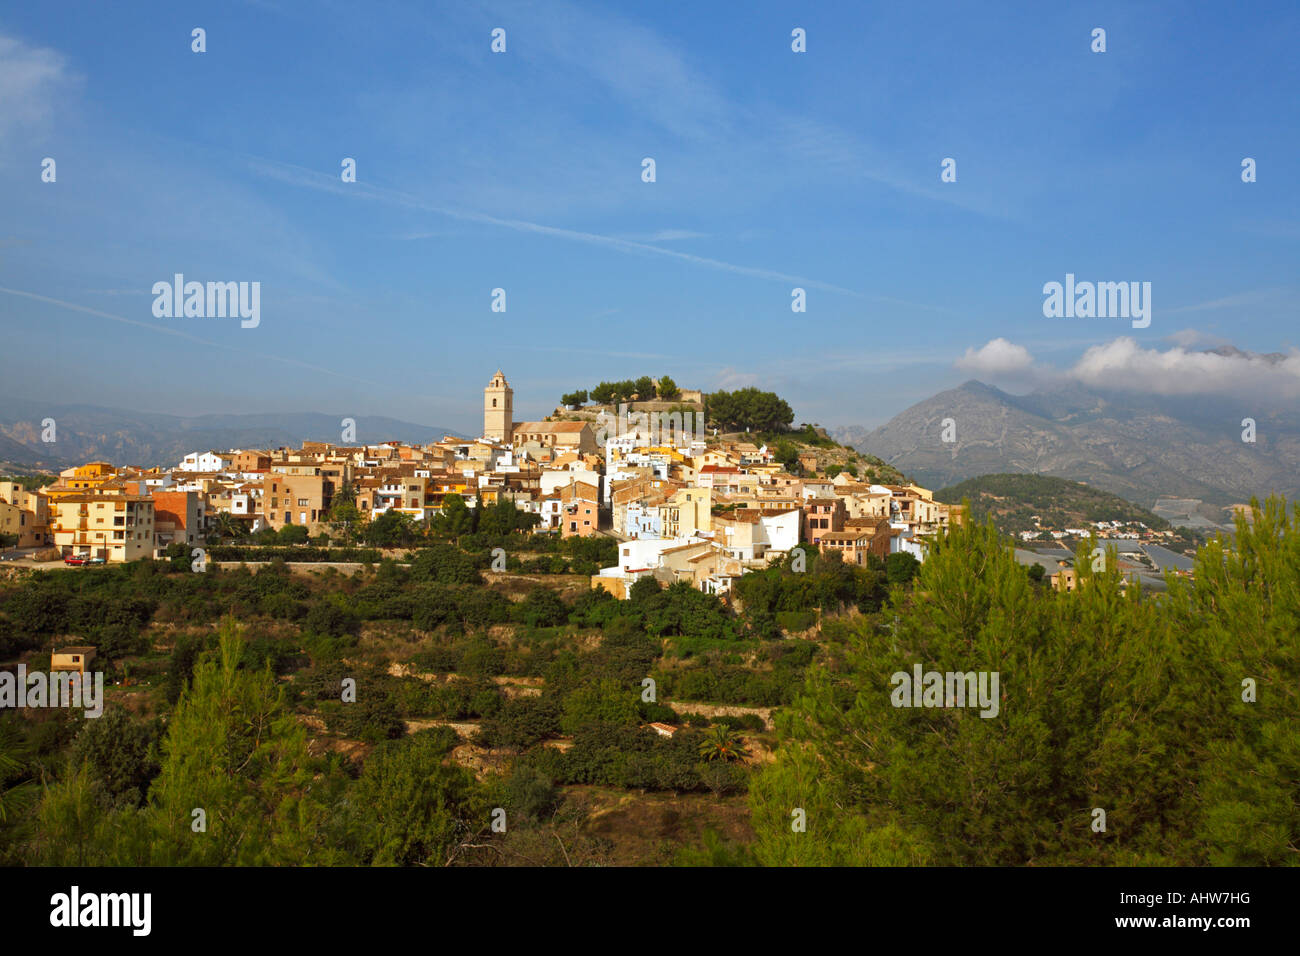 Spanish Town on Hillside Stock Photo